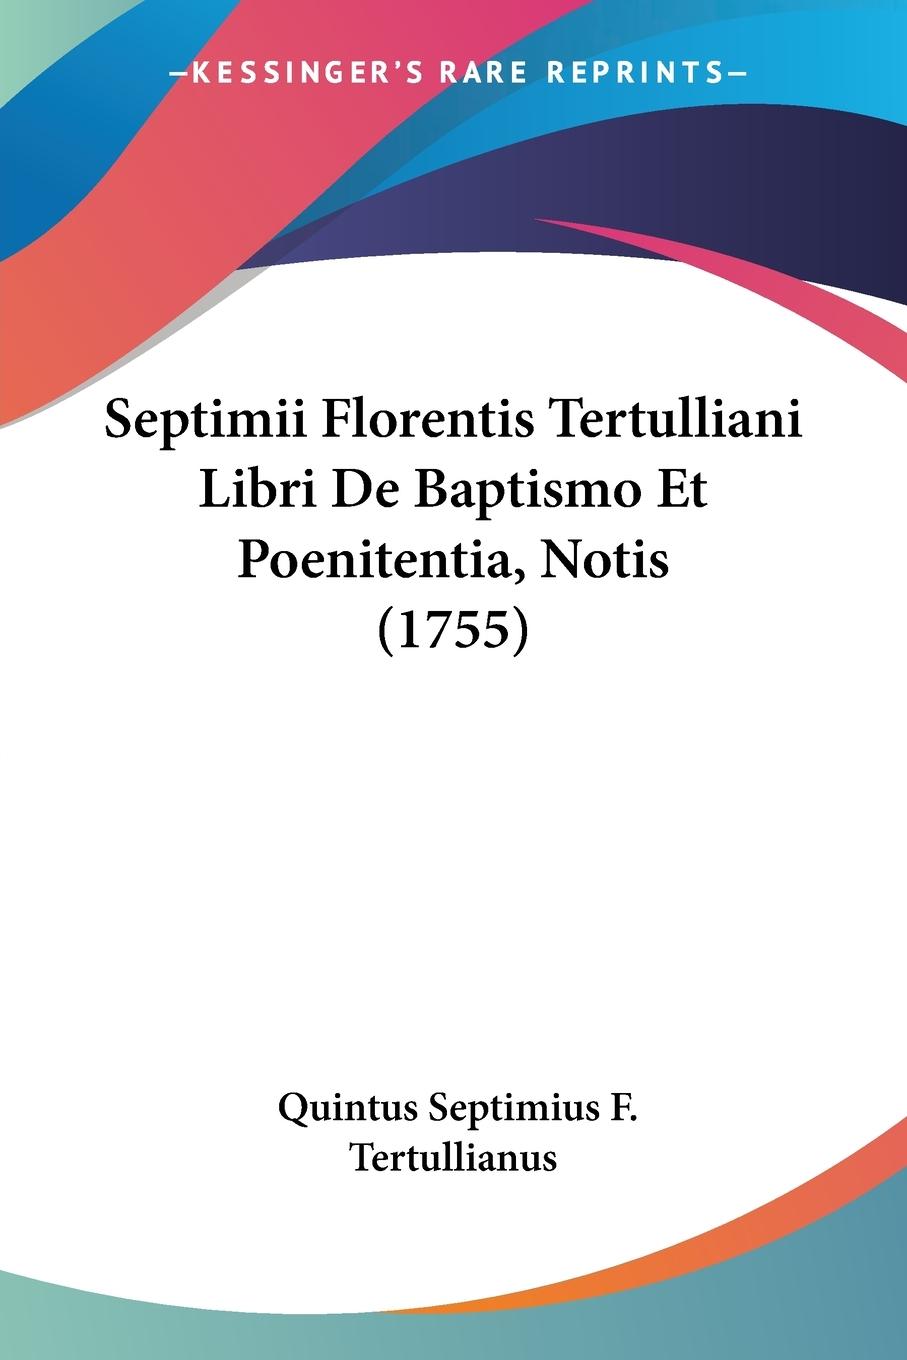 Septimii Florentis Tertulliani Libri De Baptismo Et Poenitentia, Notis (1755) - Tertullianus, Quintus Septimius F.